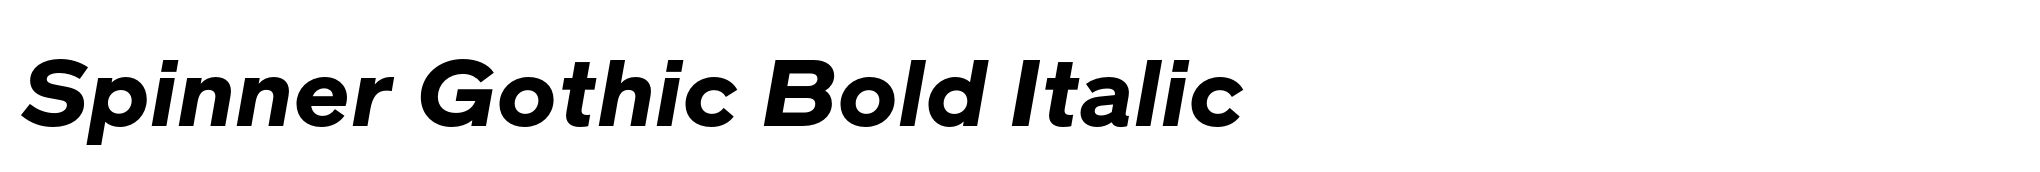 Spinner Gothic Bold Italic image